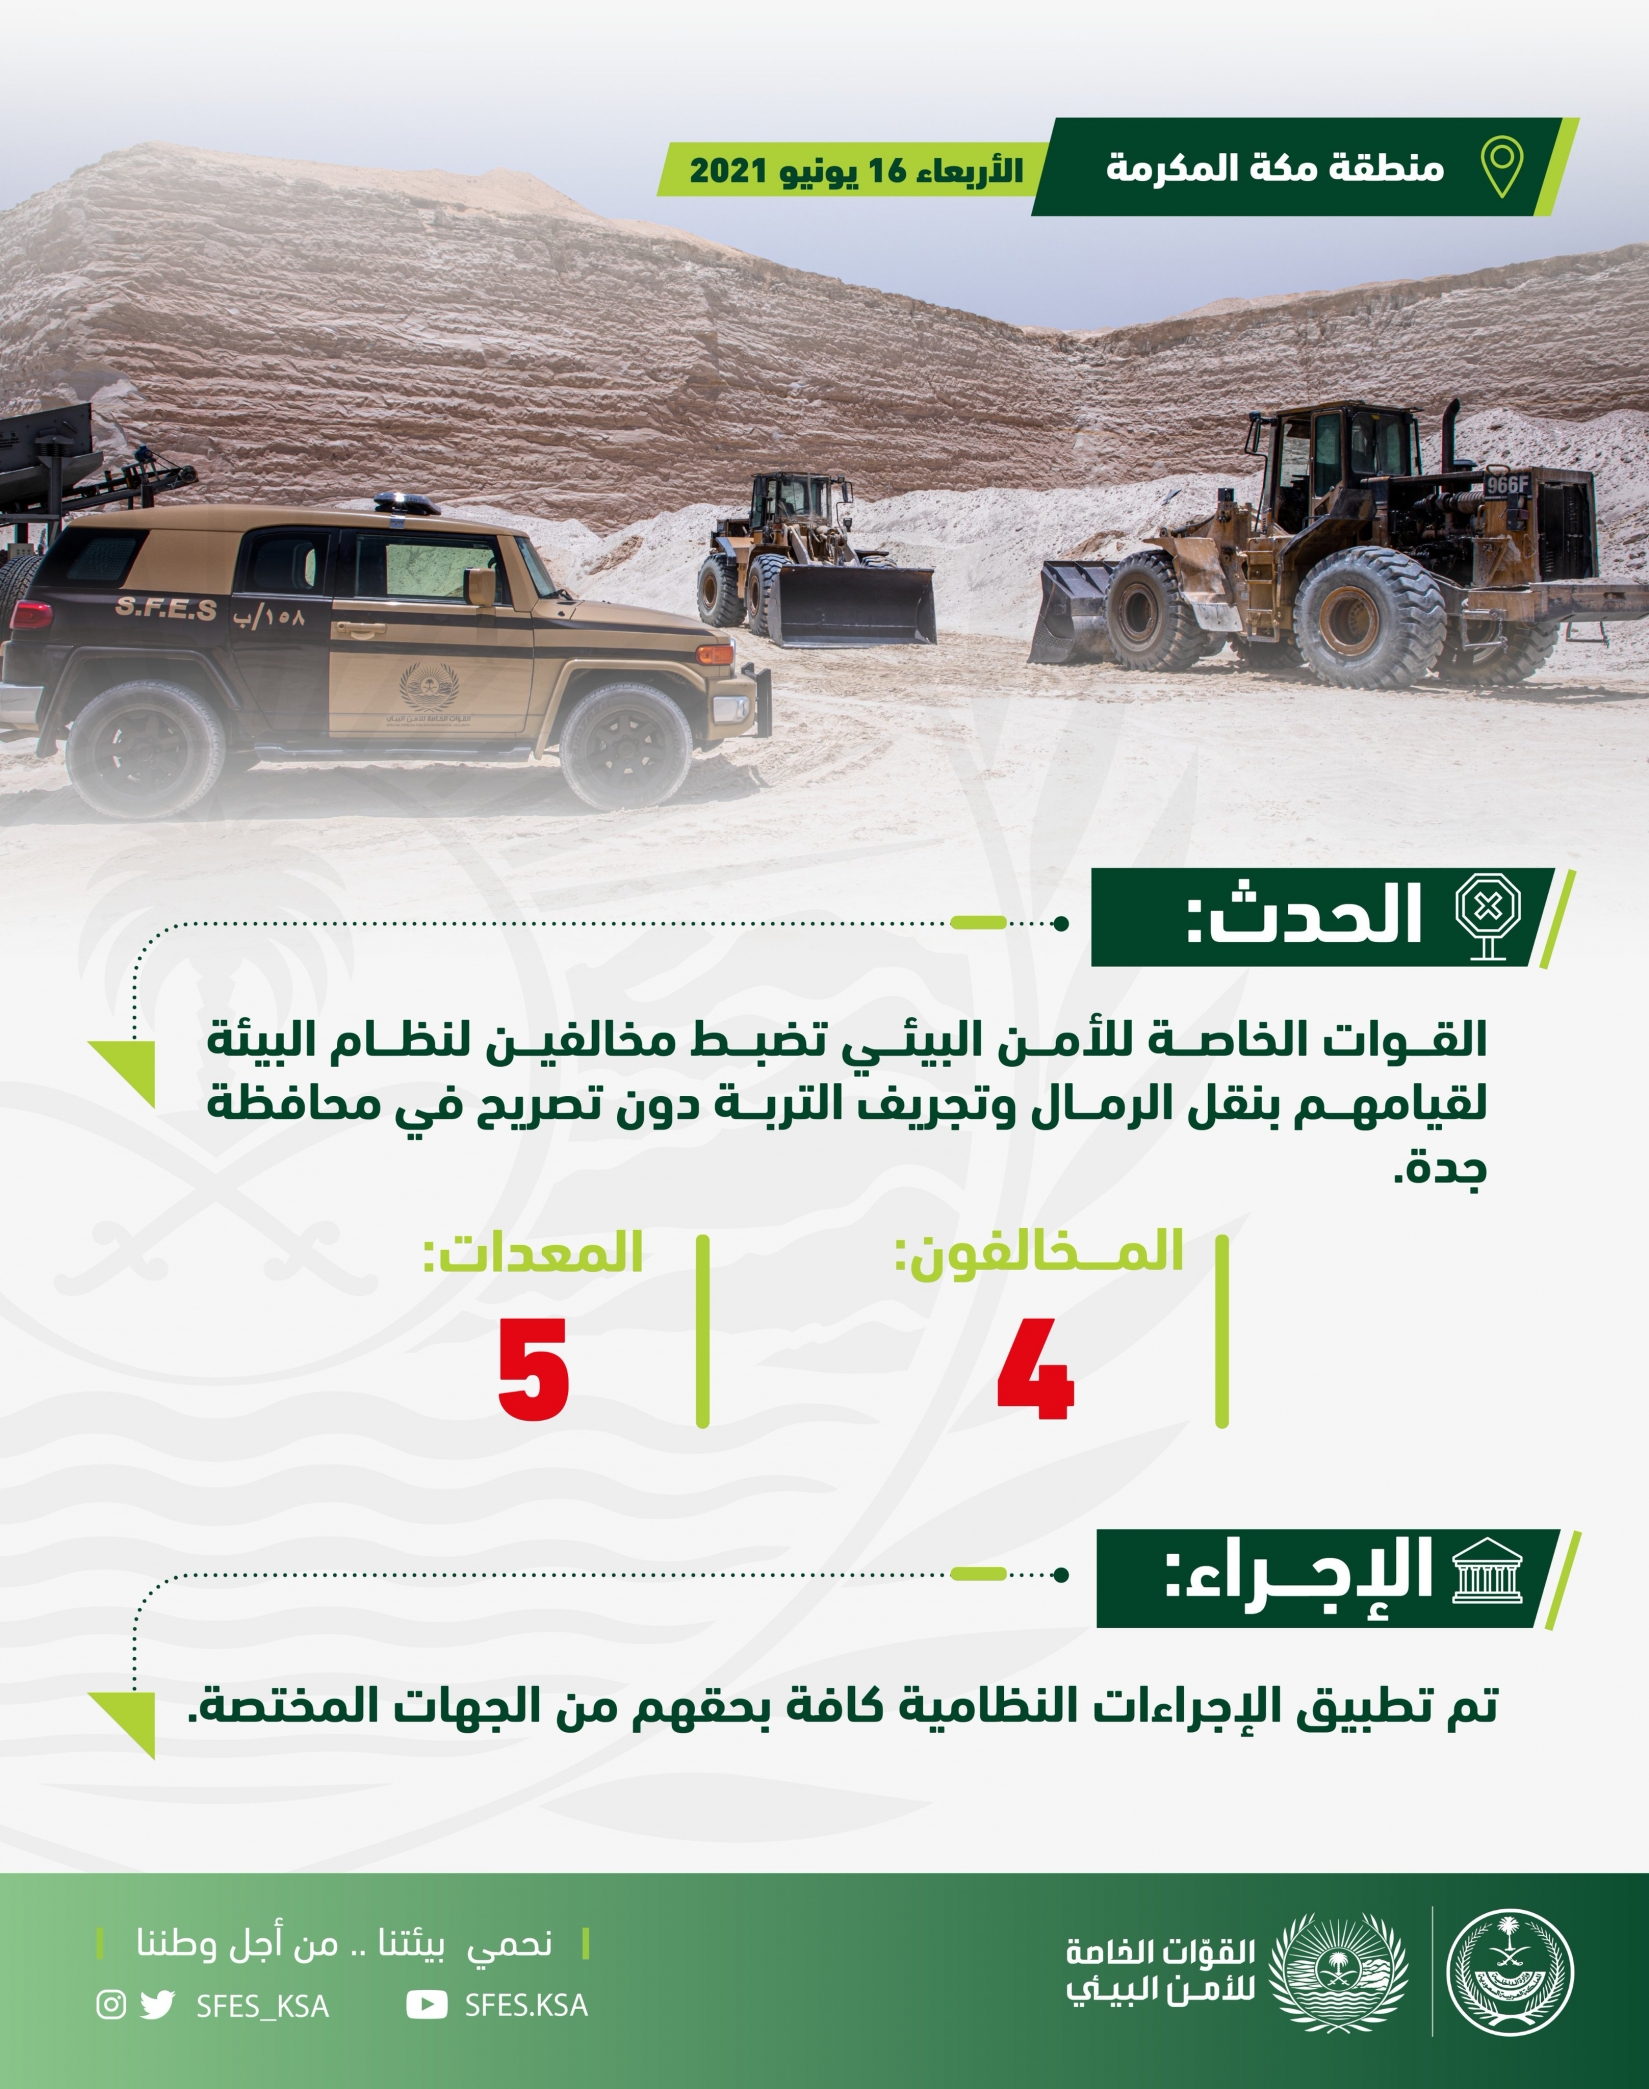 القوات الخاصة للأمن البيئي تضبط 4 مخالفين و5 معدات في جدة